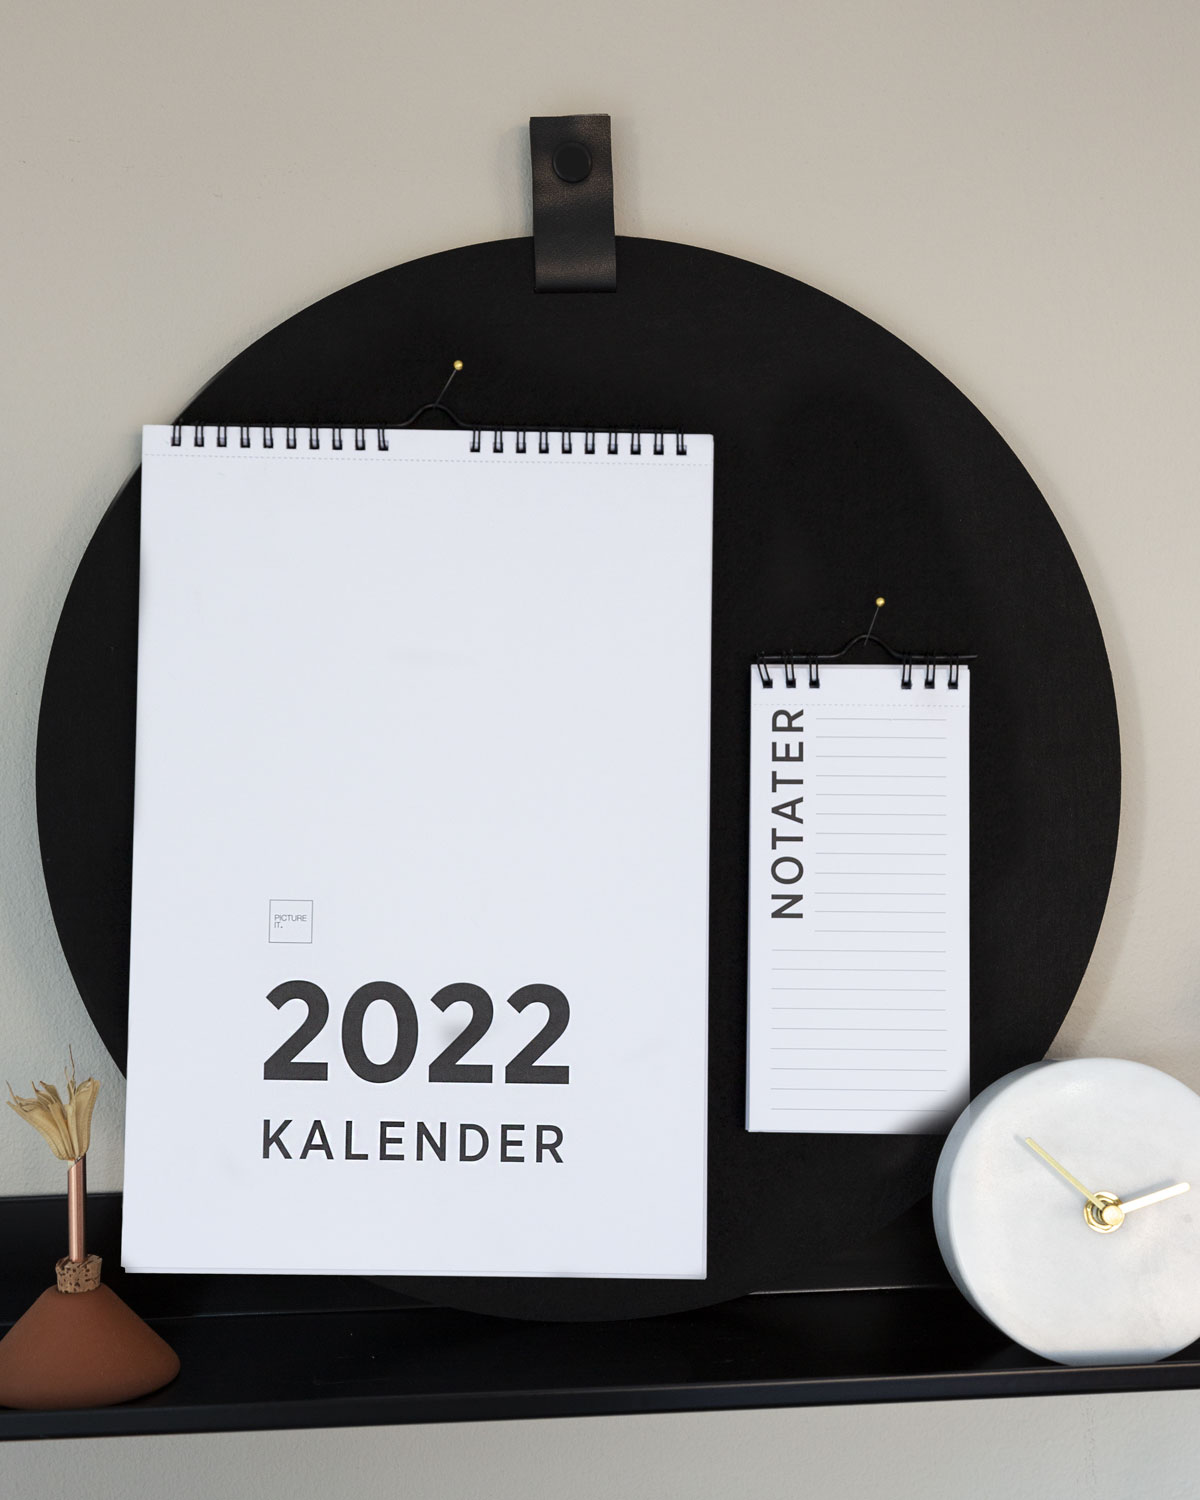 2022 Kalender med ukenummer